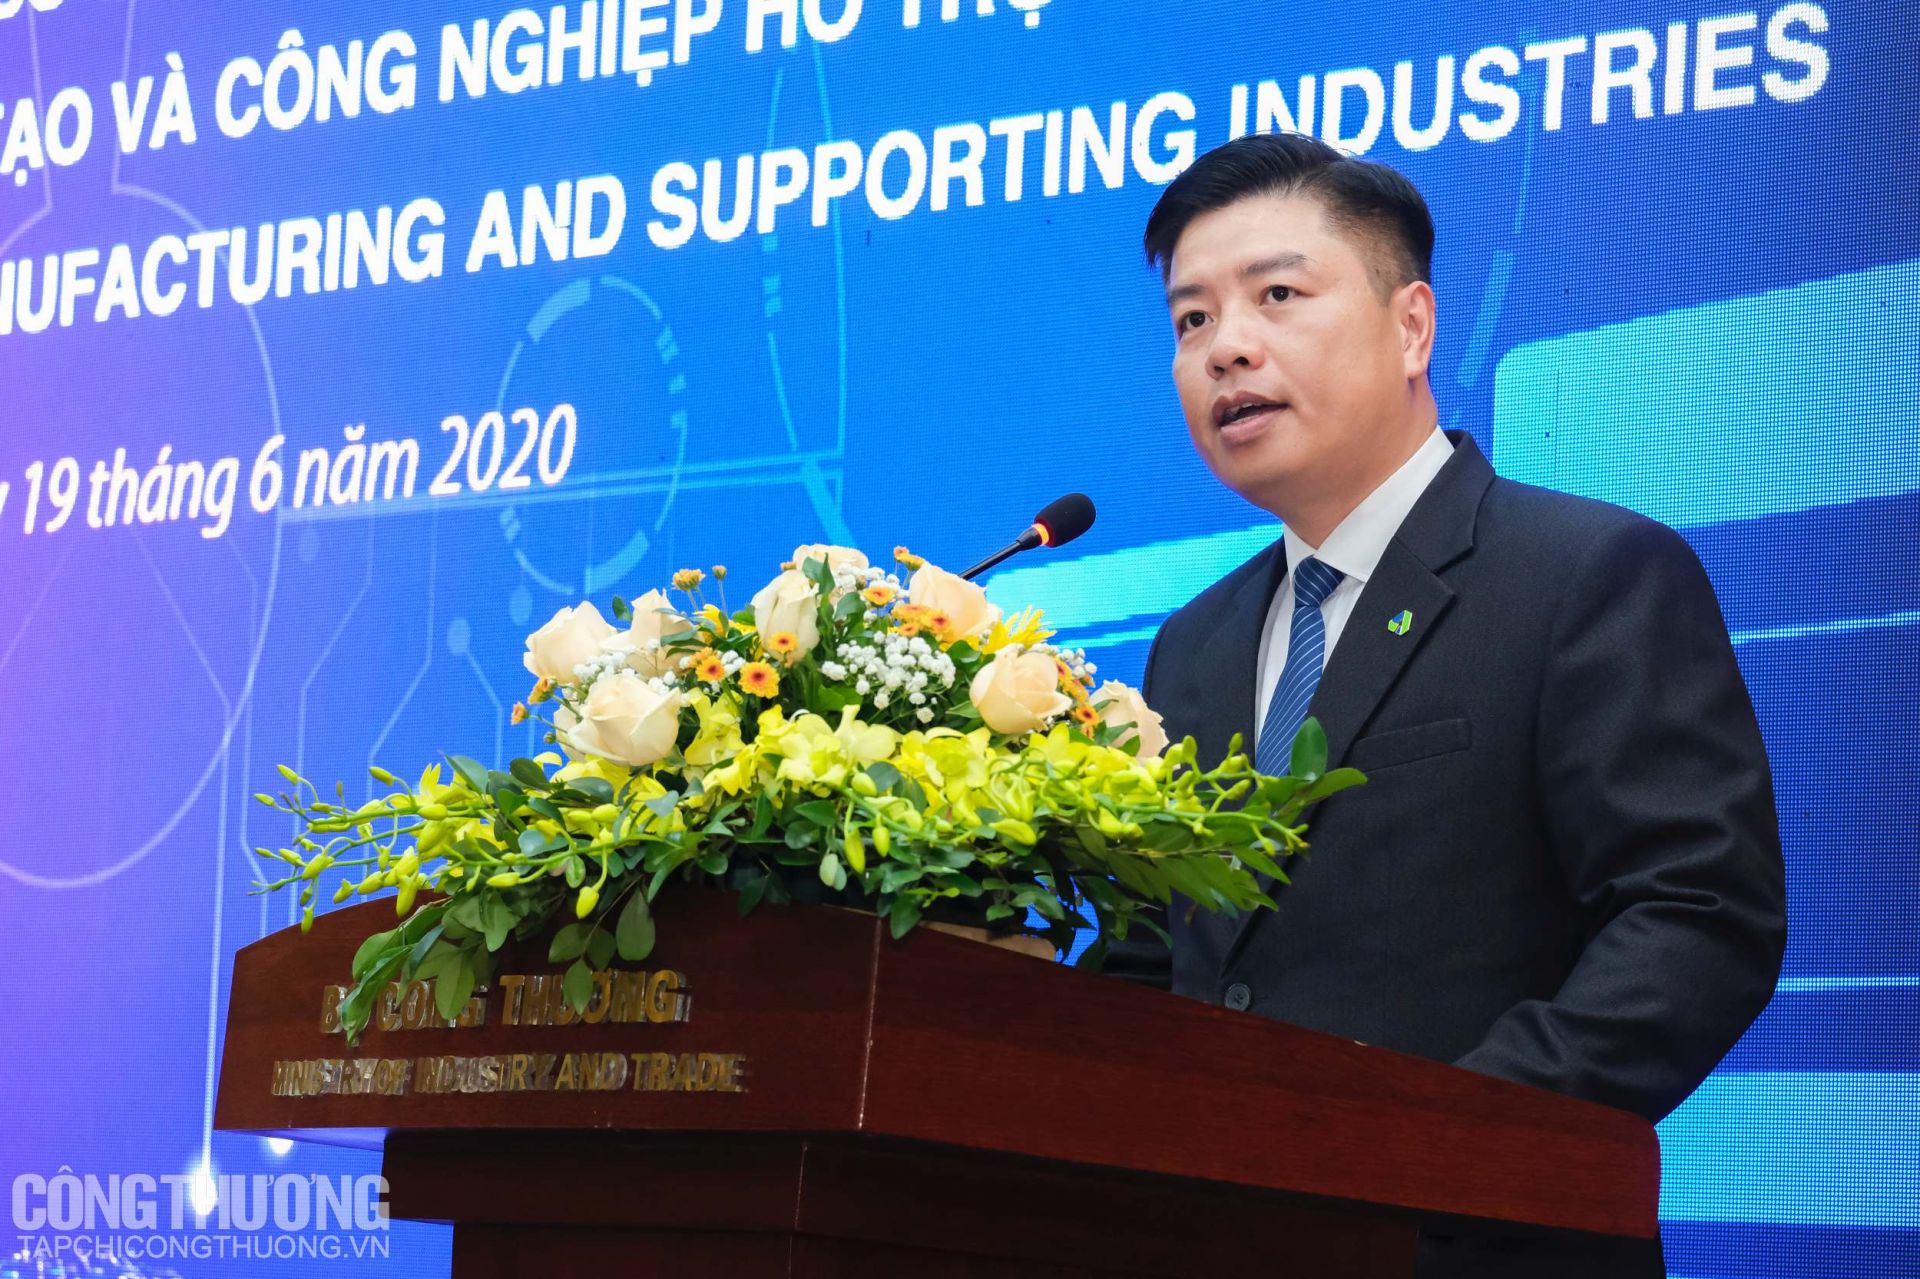 Ông Bùi Minh Hải - Chủ tịch HĐQT Công ty CP Nhựa Hà Nội (An Phát Holdings Group